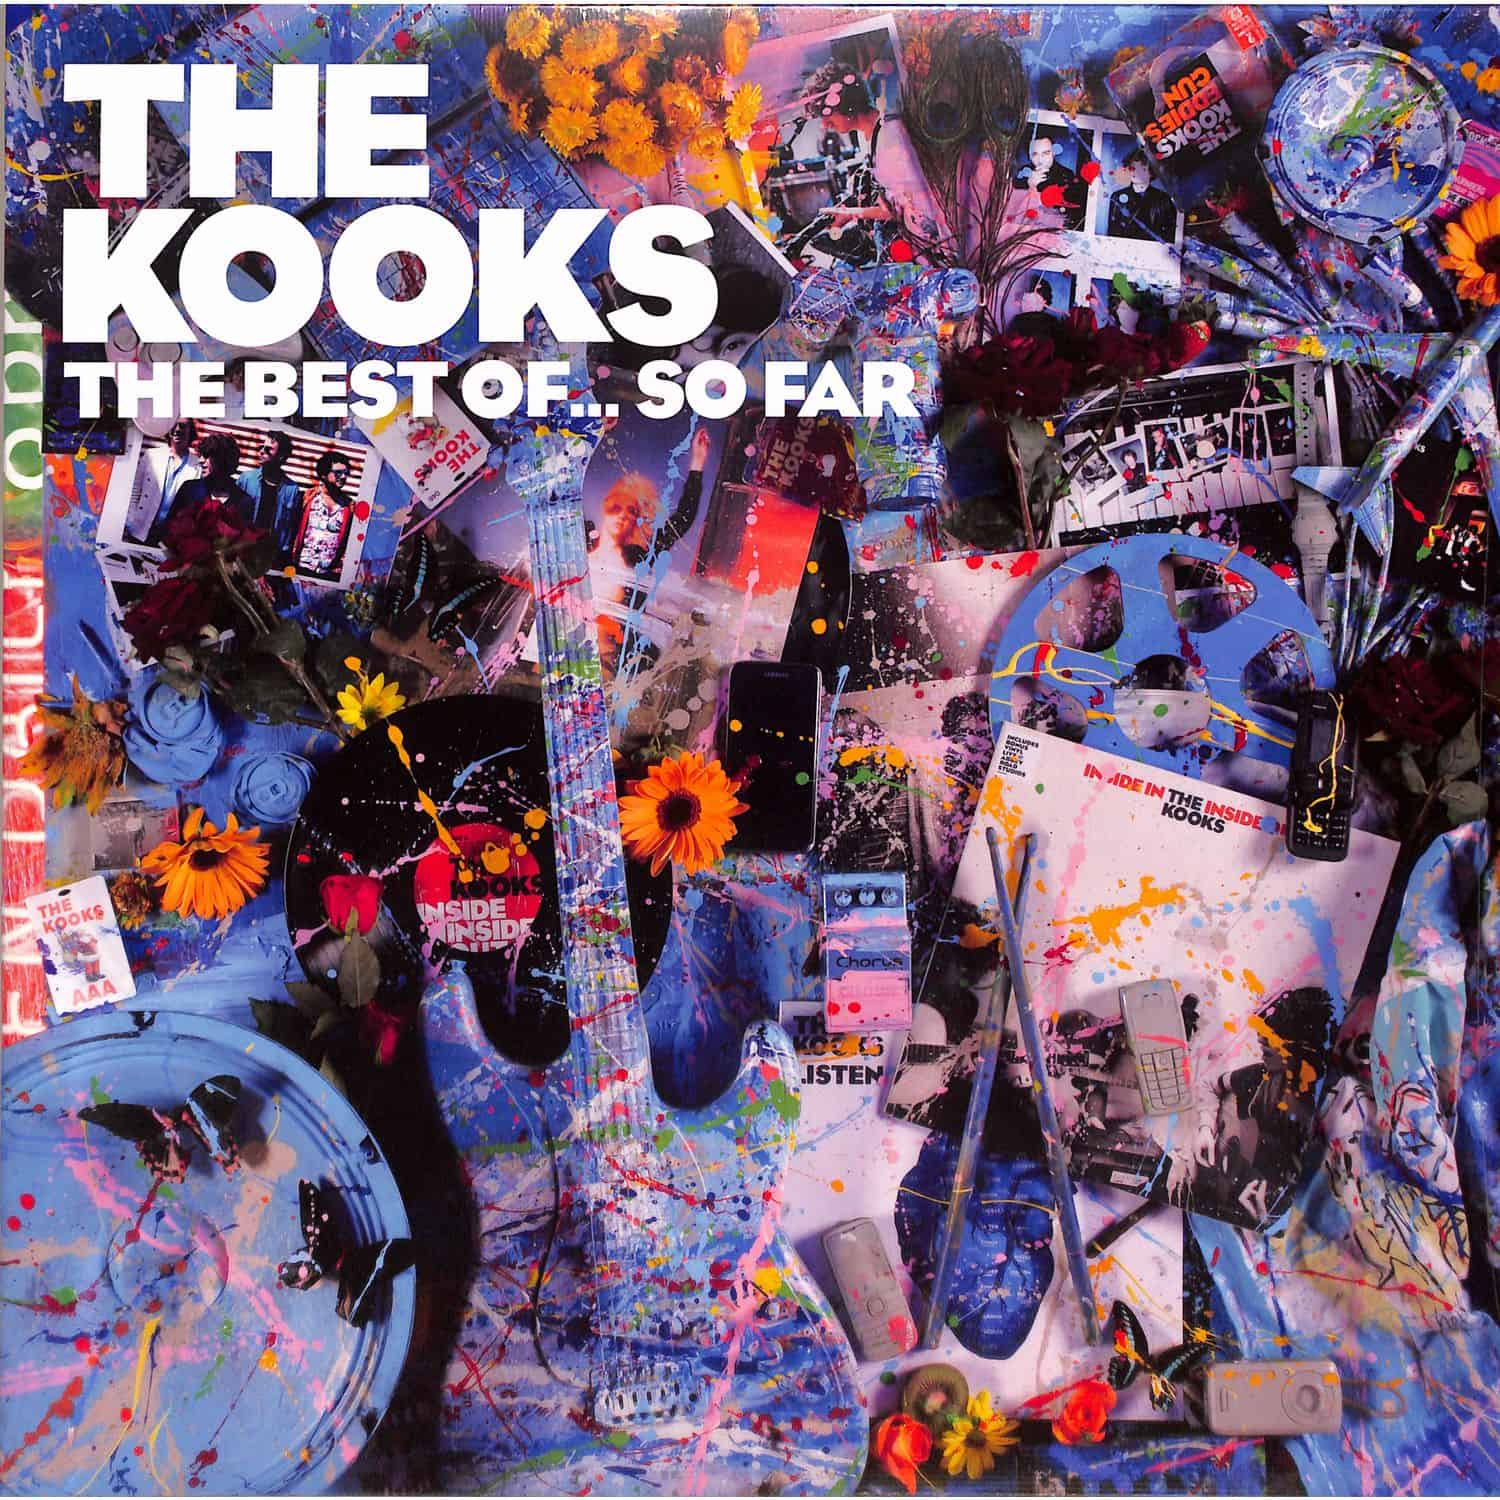 The Kooks - THE BEST OF... SO FAR 